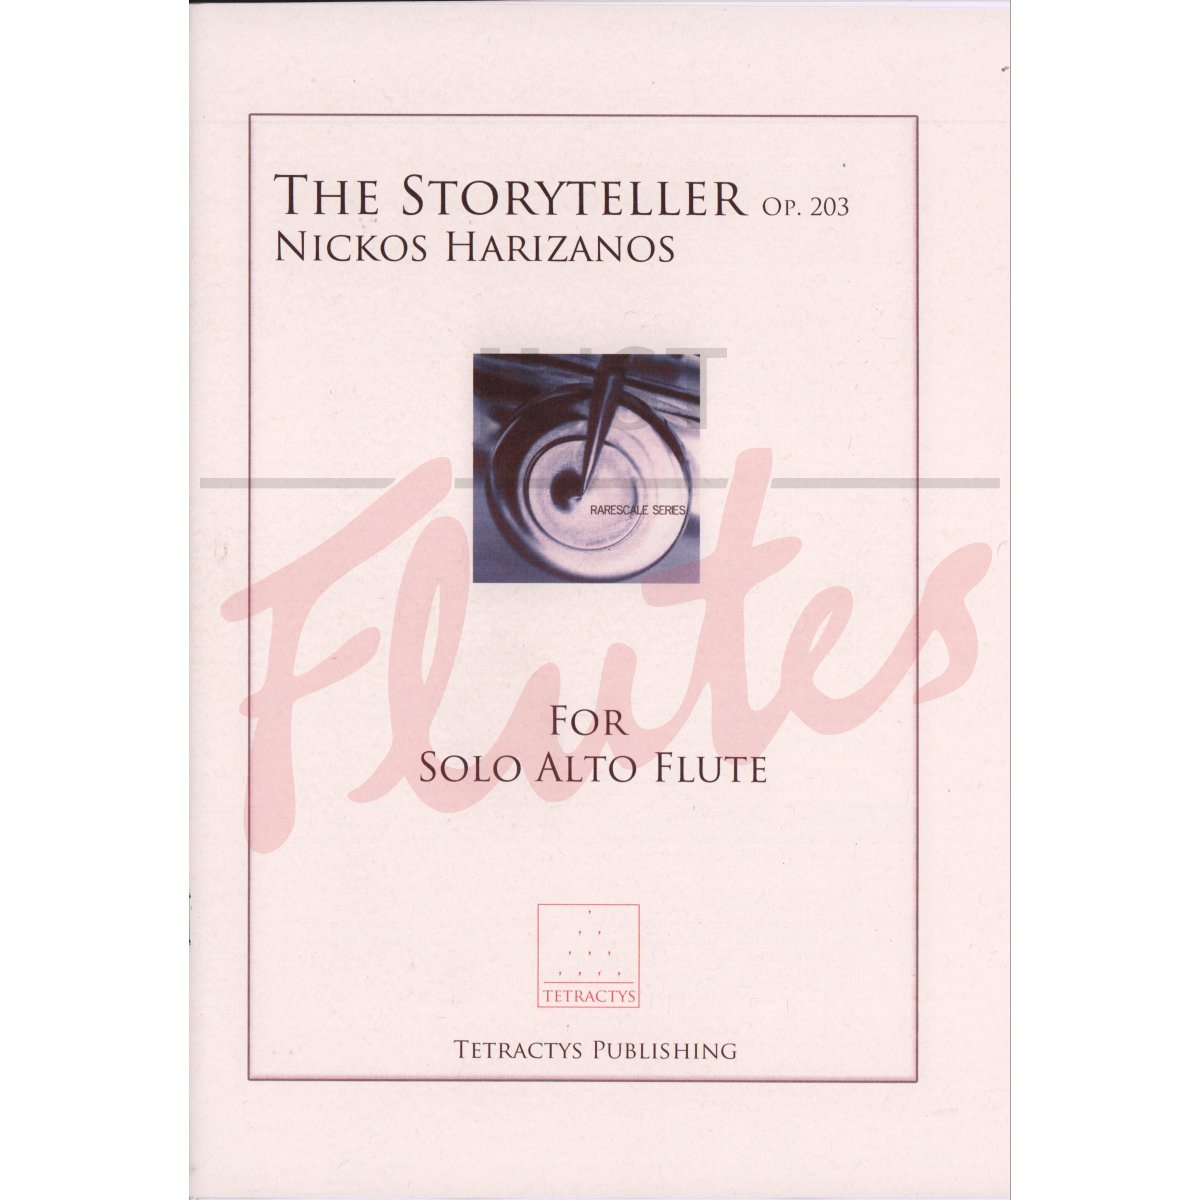 The Storyteller for Solo Alto Flute